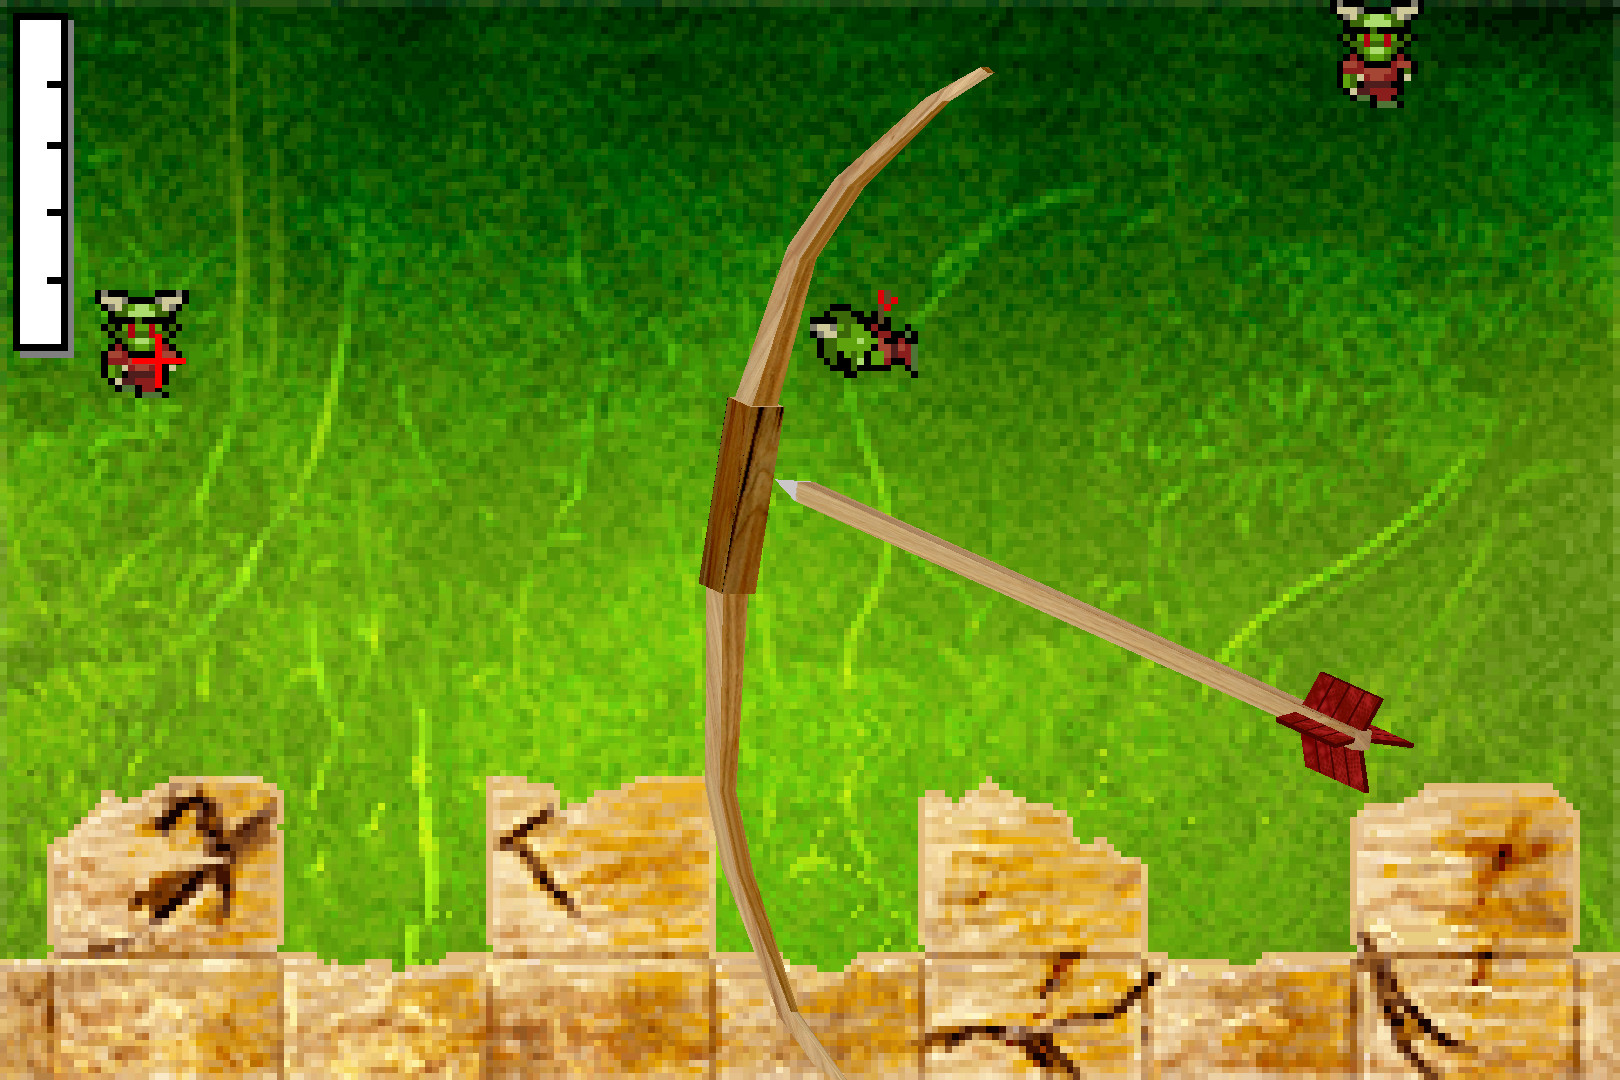 Monster RPG 2 screenshot